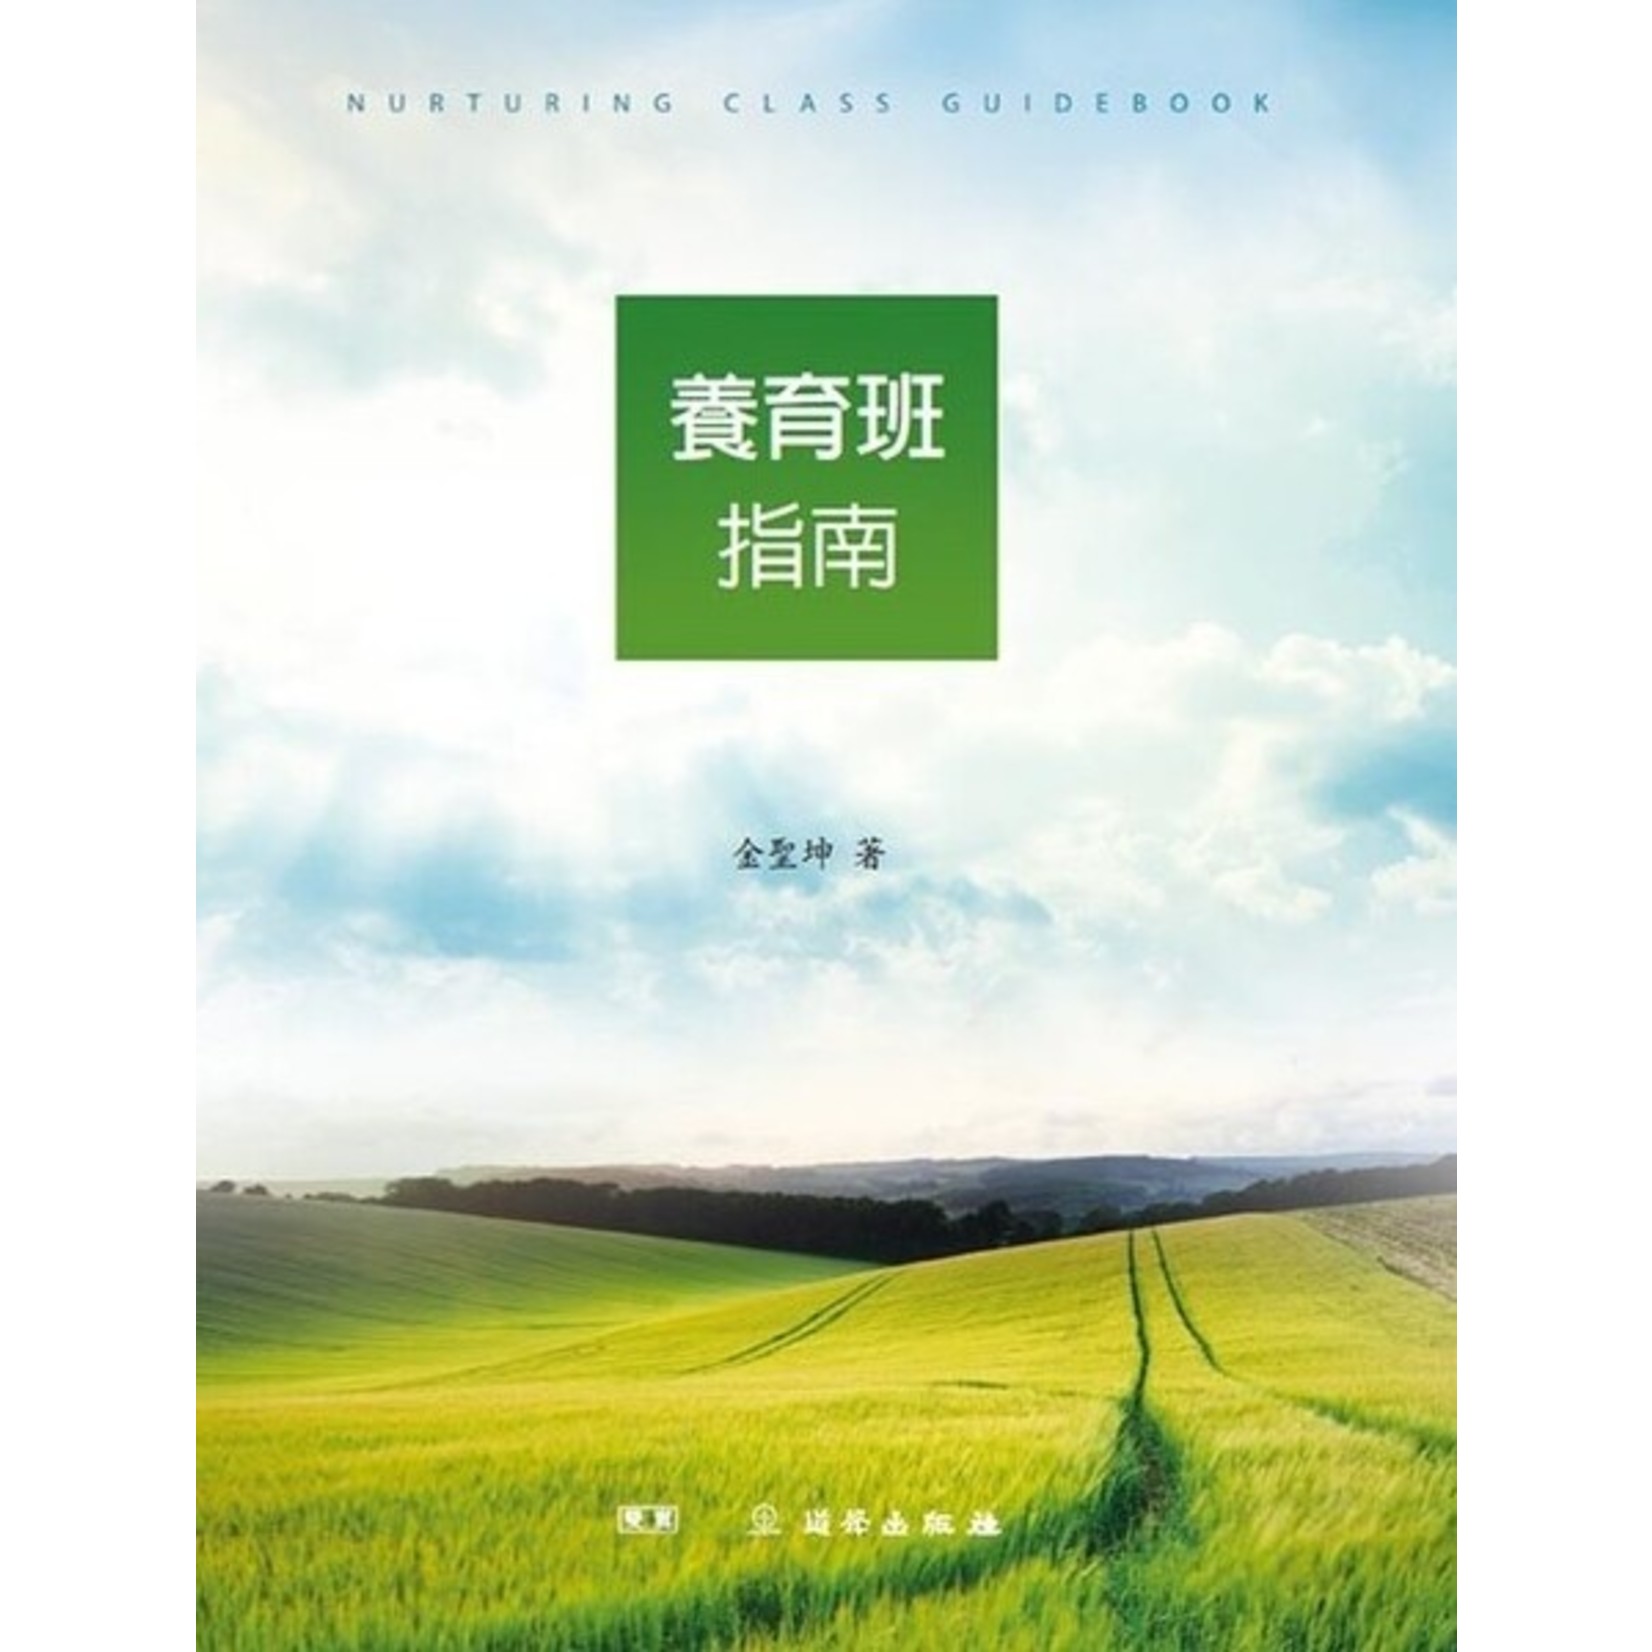 道聲 Taosheng Taiwan 養育班指南 Nurturing Class Guide Book